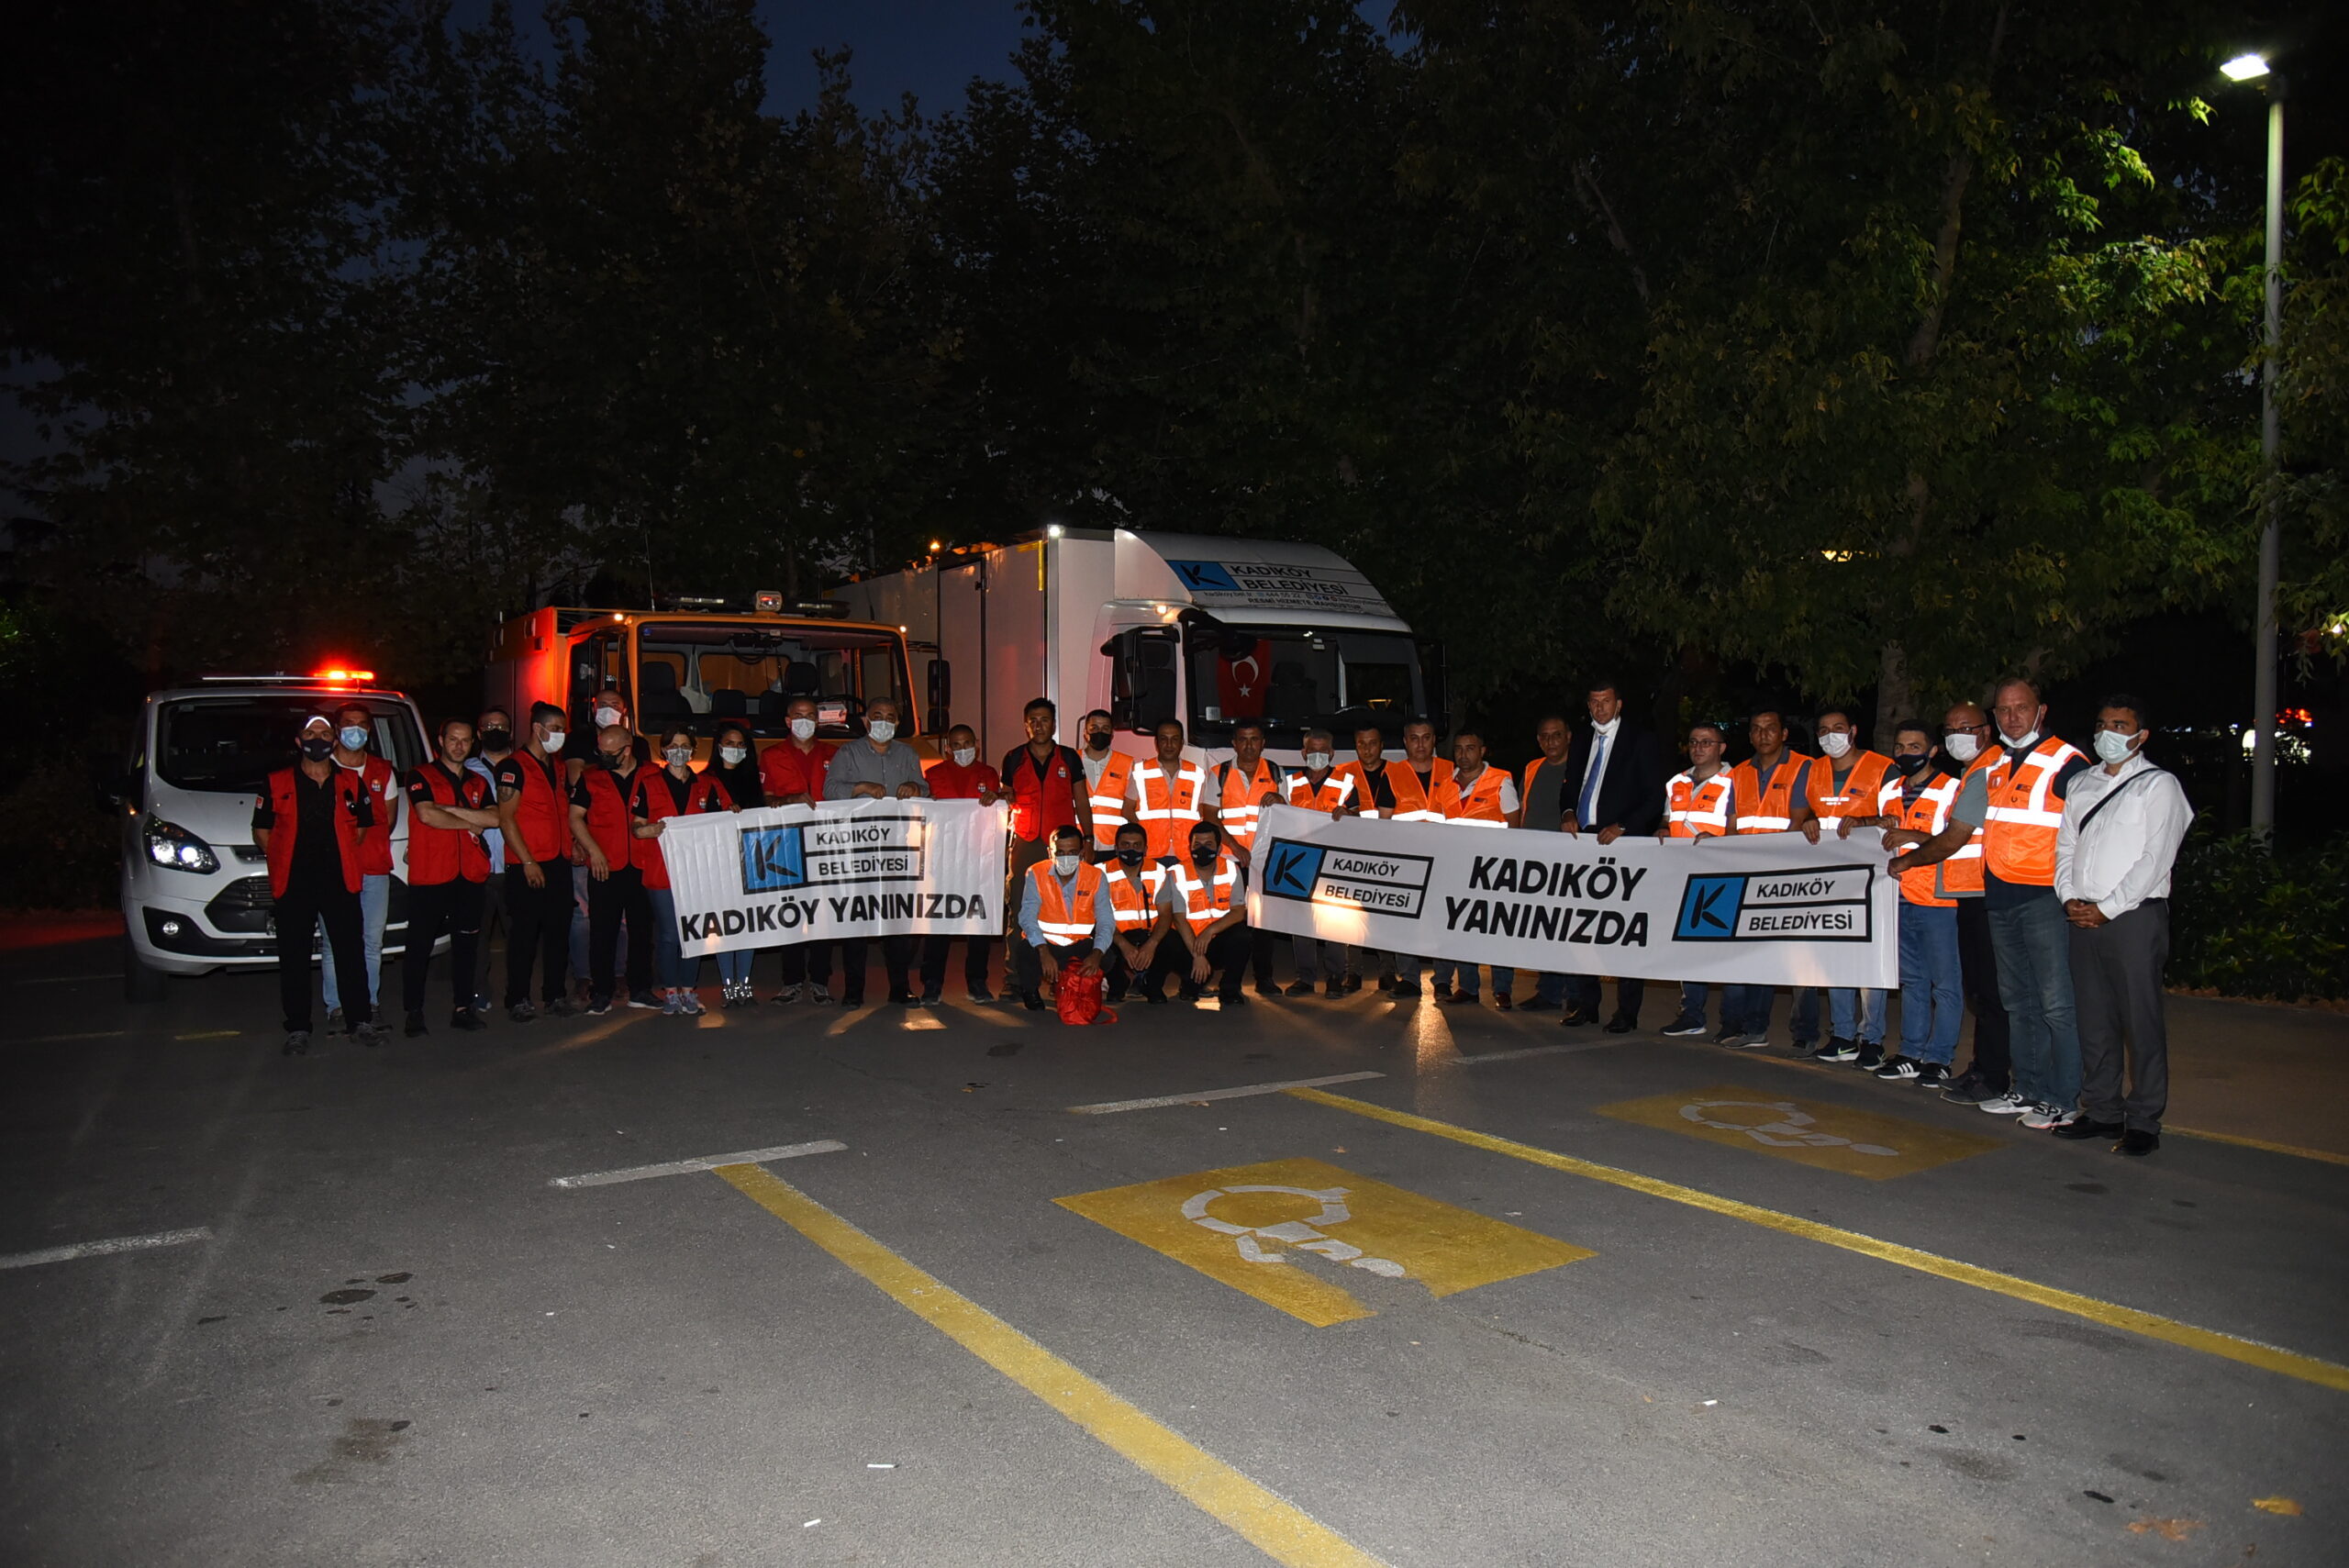  Kadıköy Belediyesi’nden Manavgat ve Marmaris’e Destek